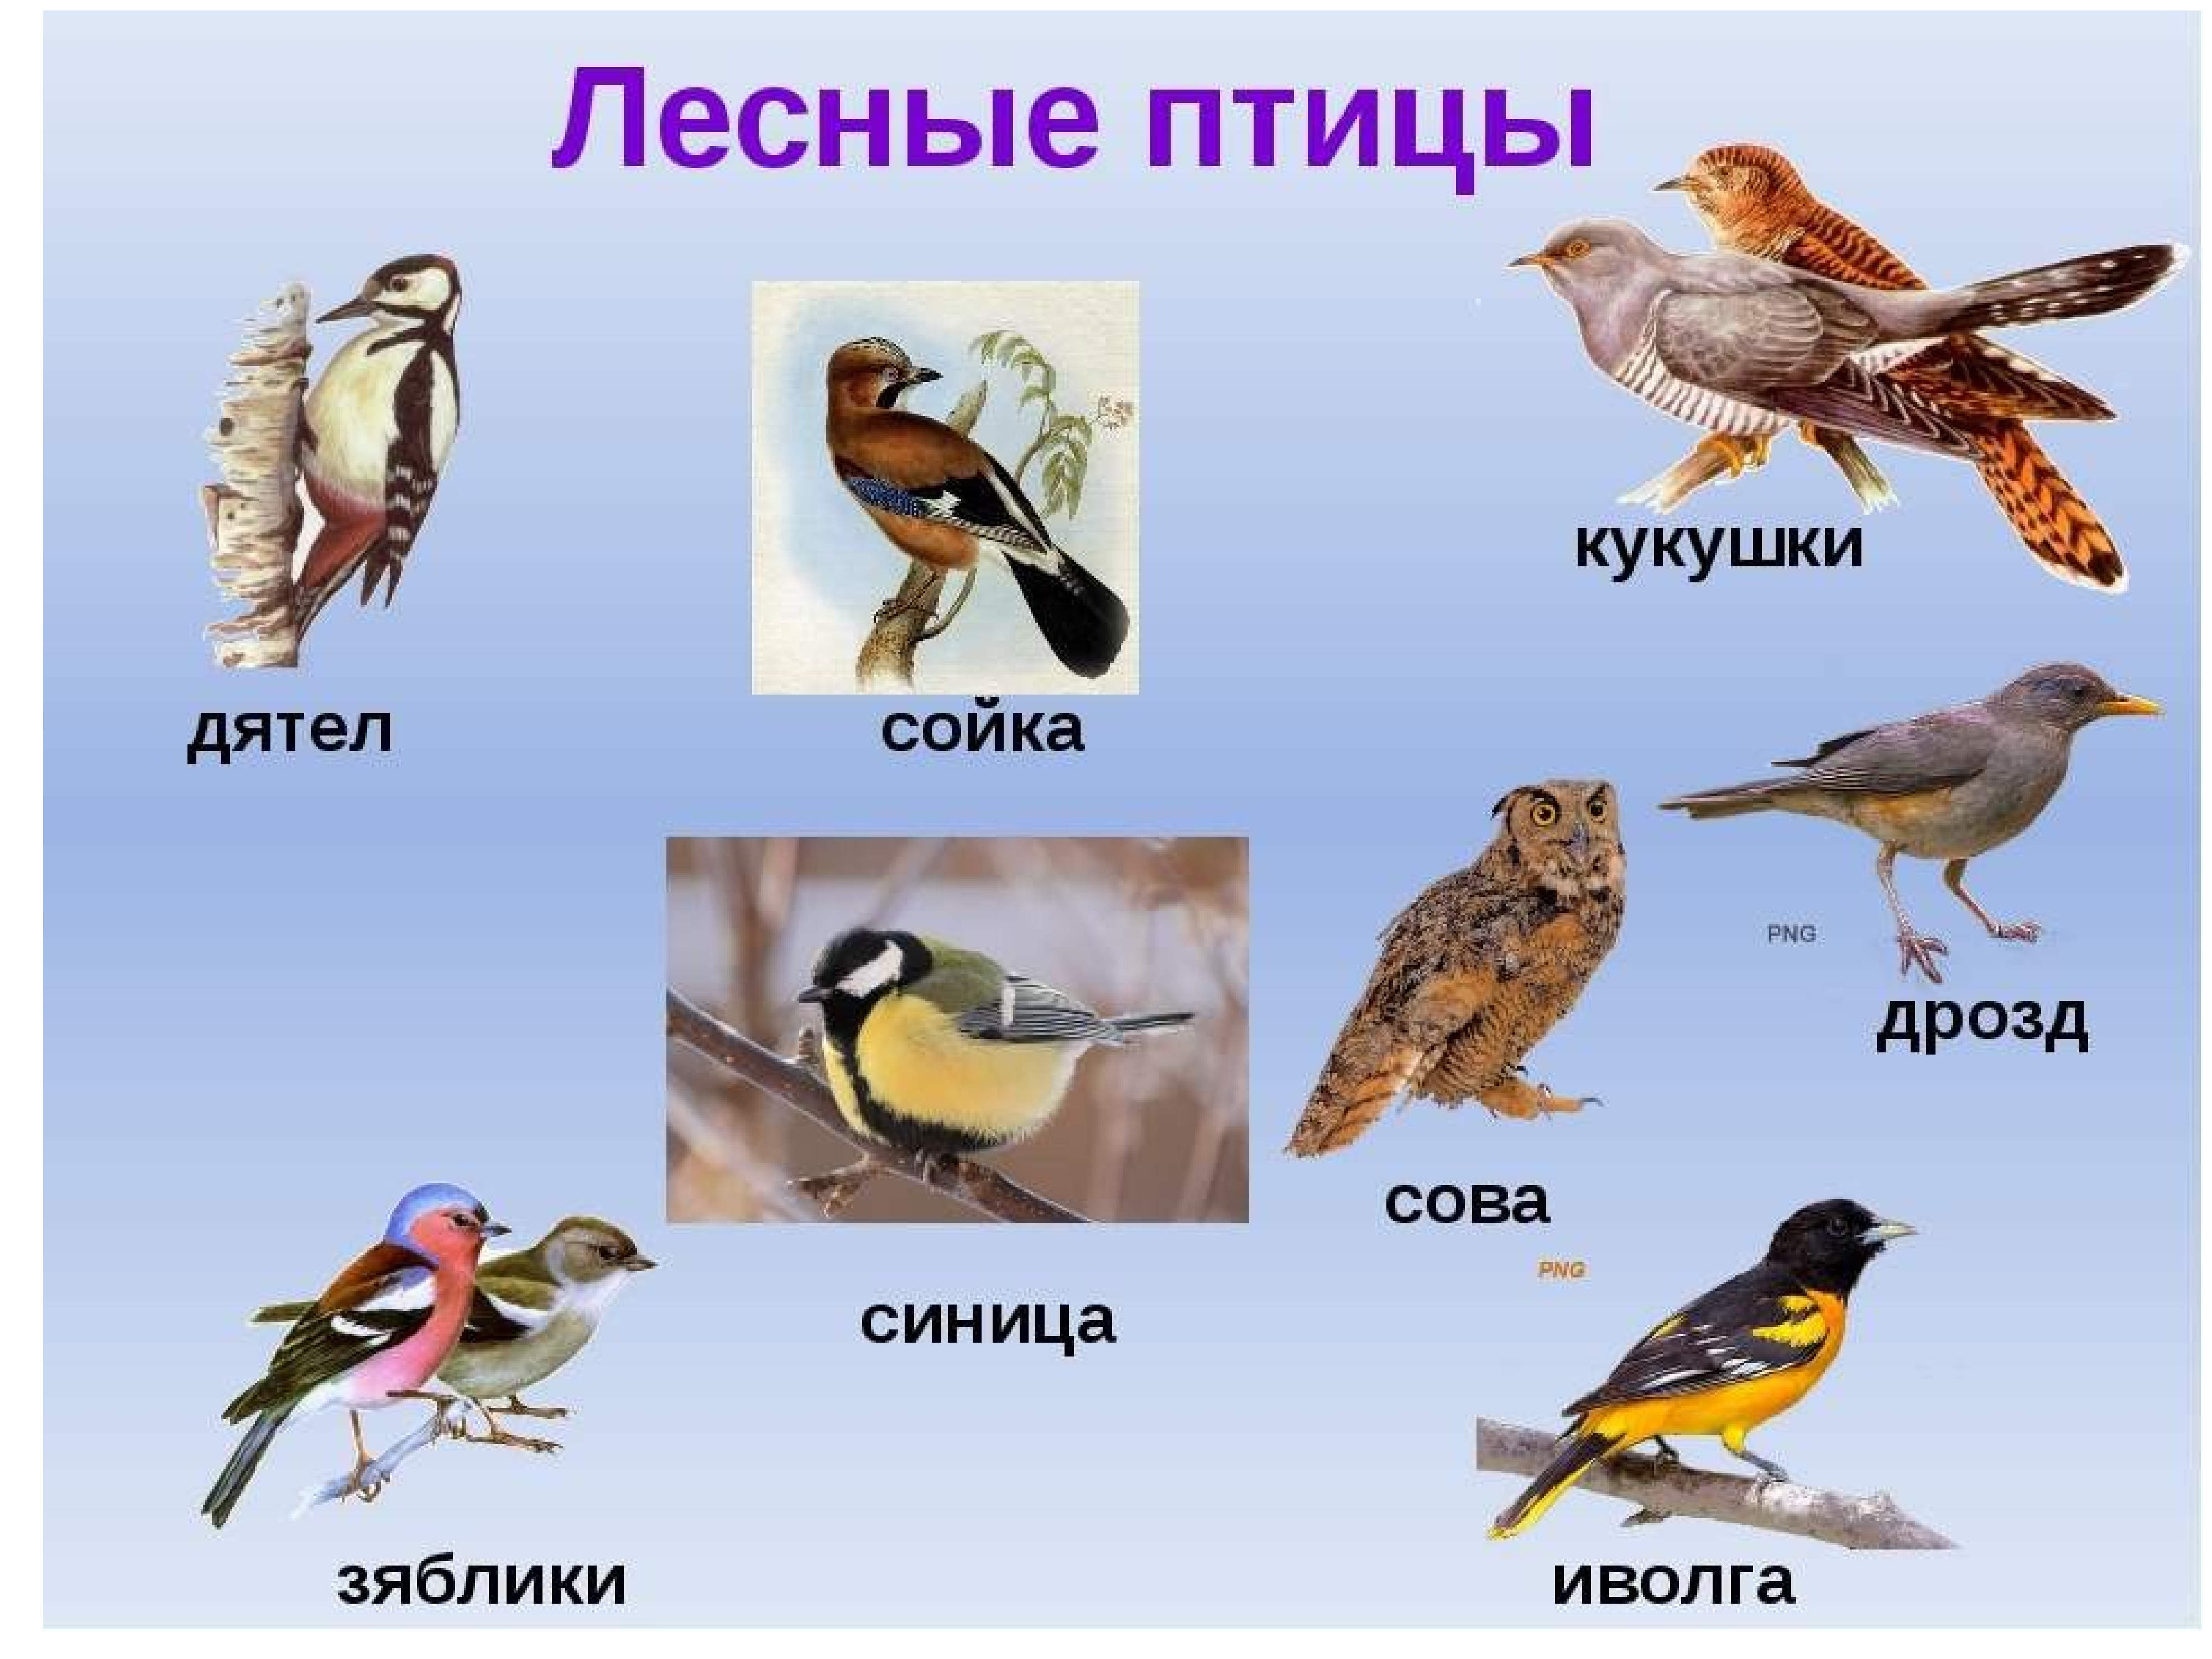 Хищные птицы вологодской области фото с названиями